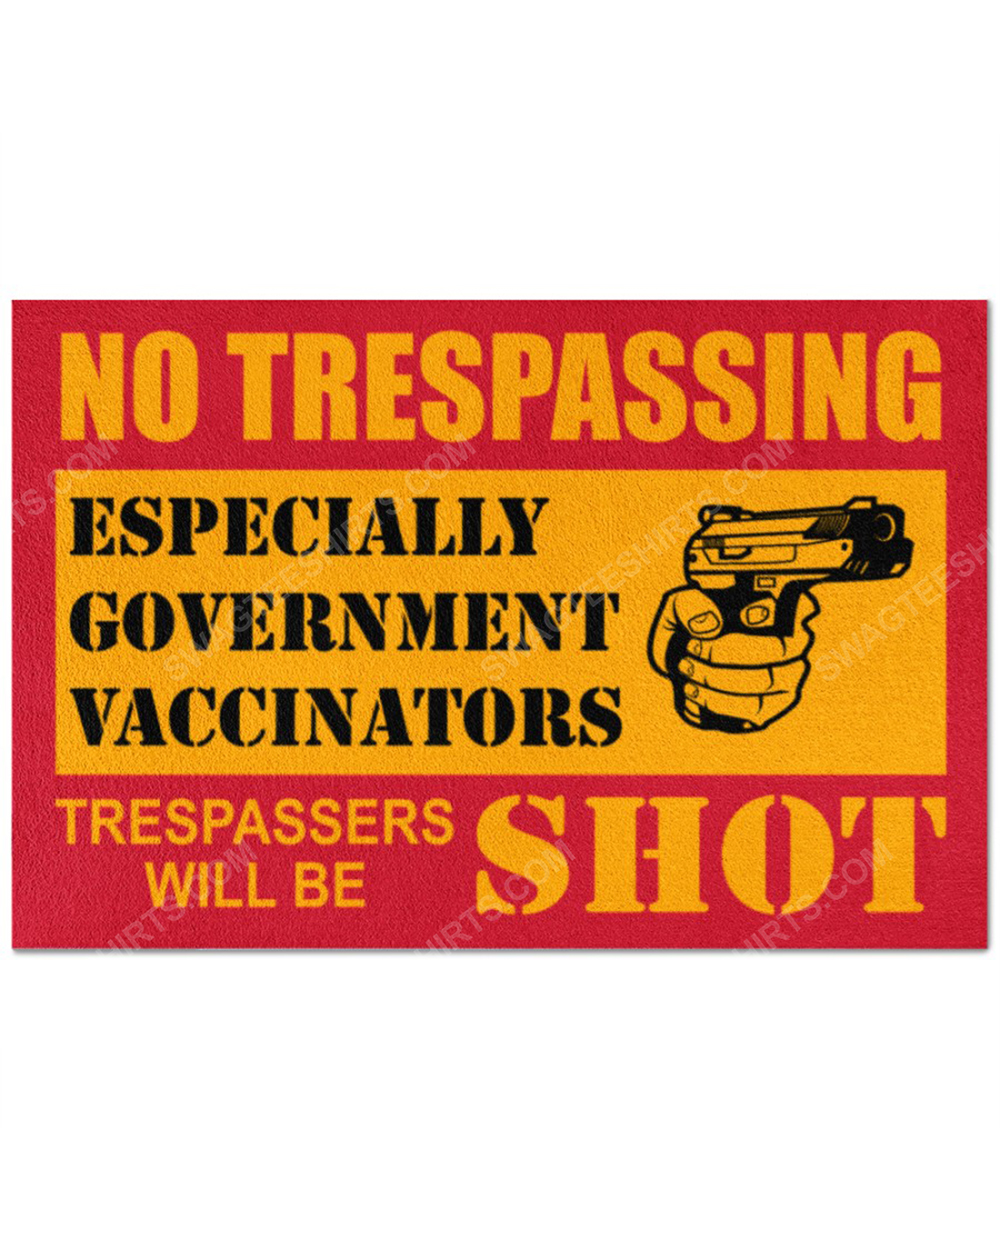 [special edition] No trespassing especially government vaccinators doormat – maria